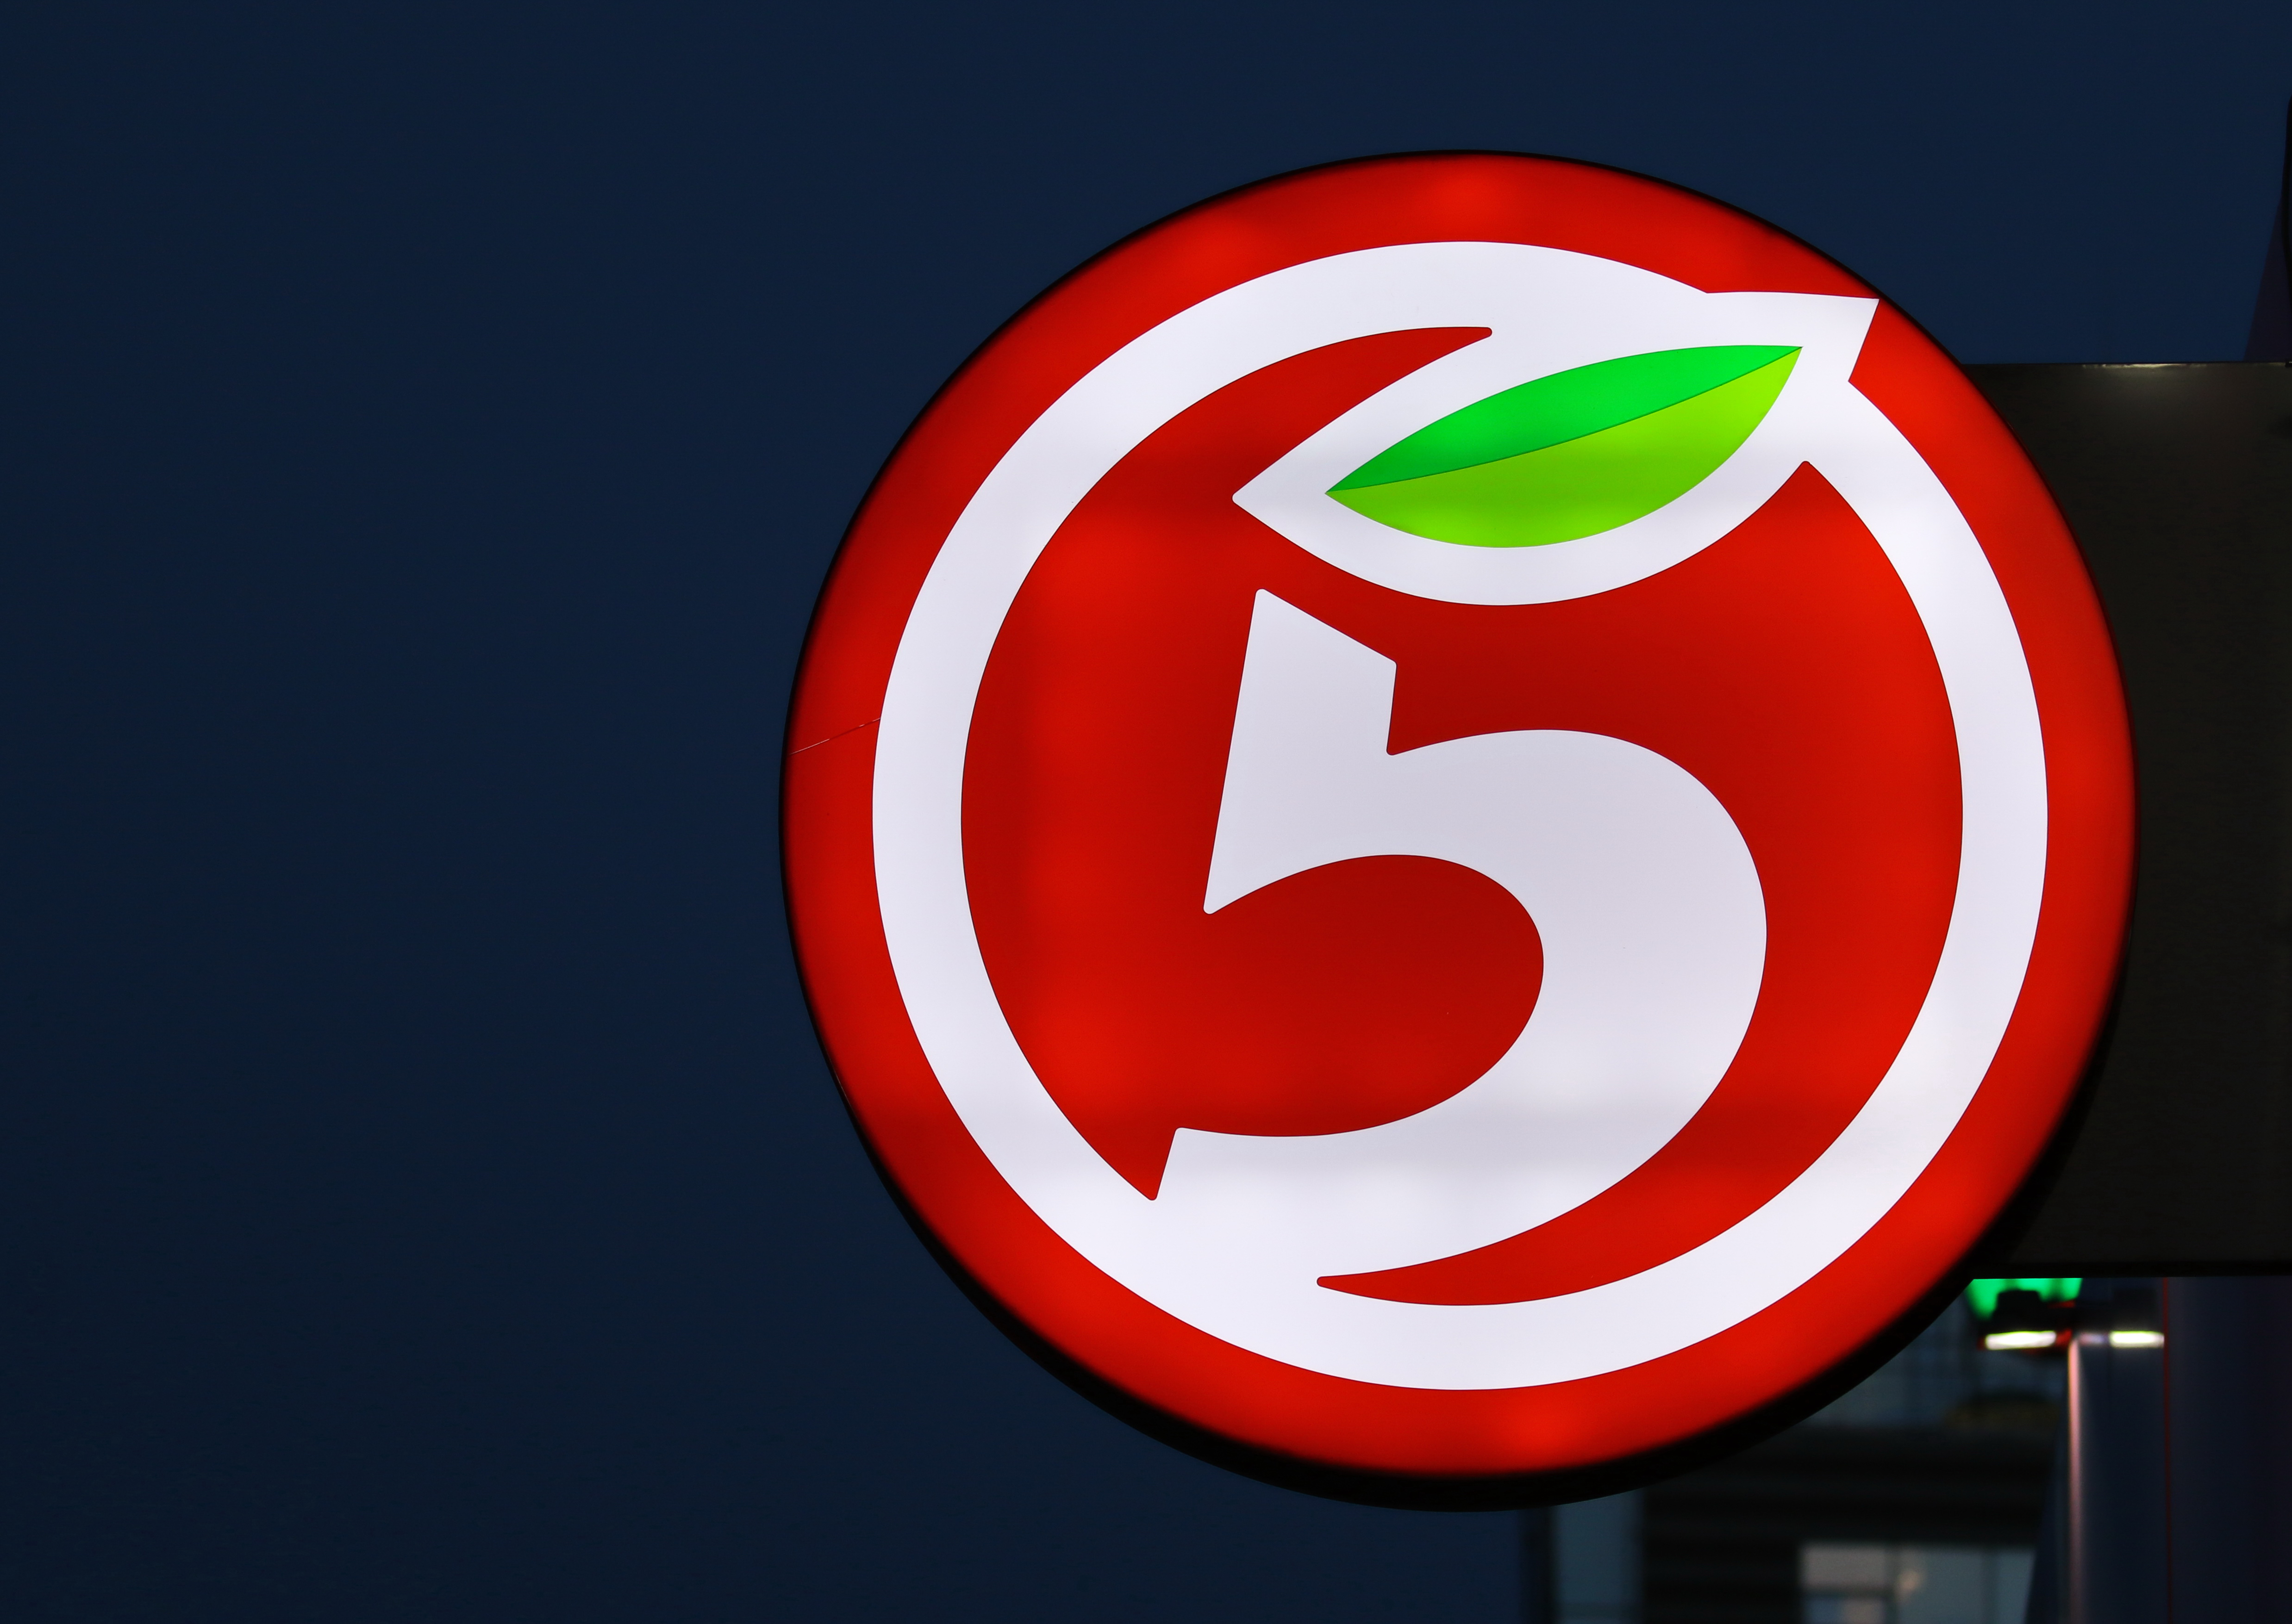 Пятерочка логотип